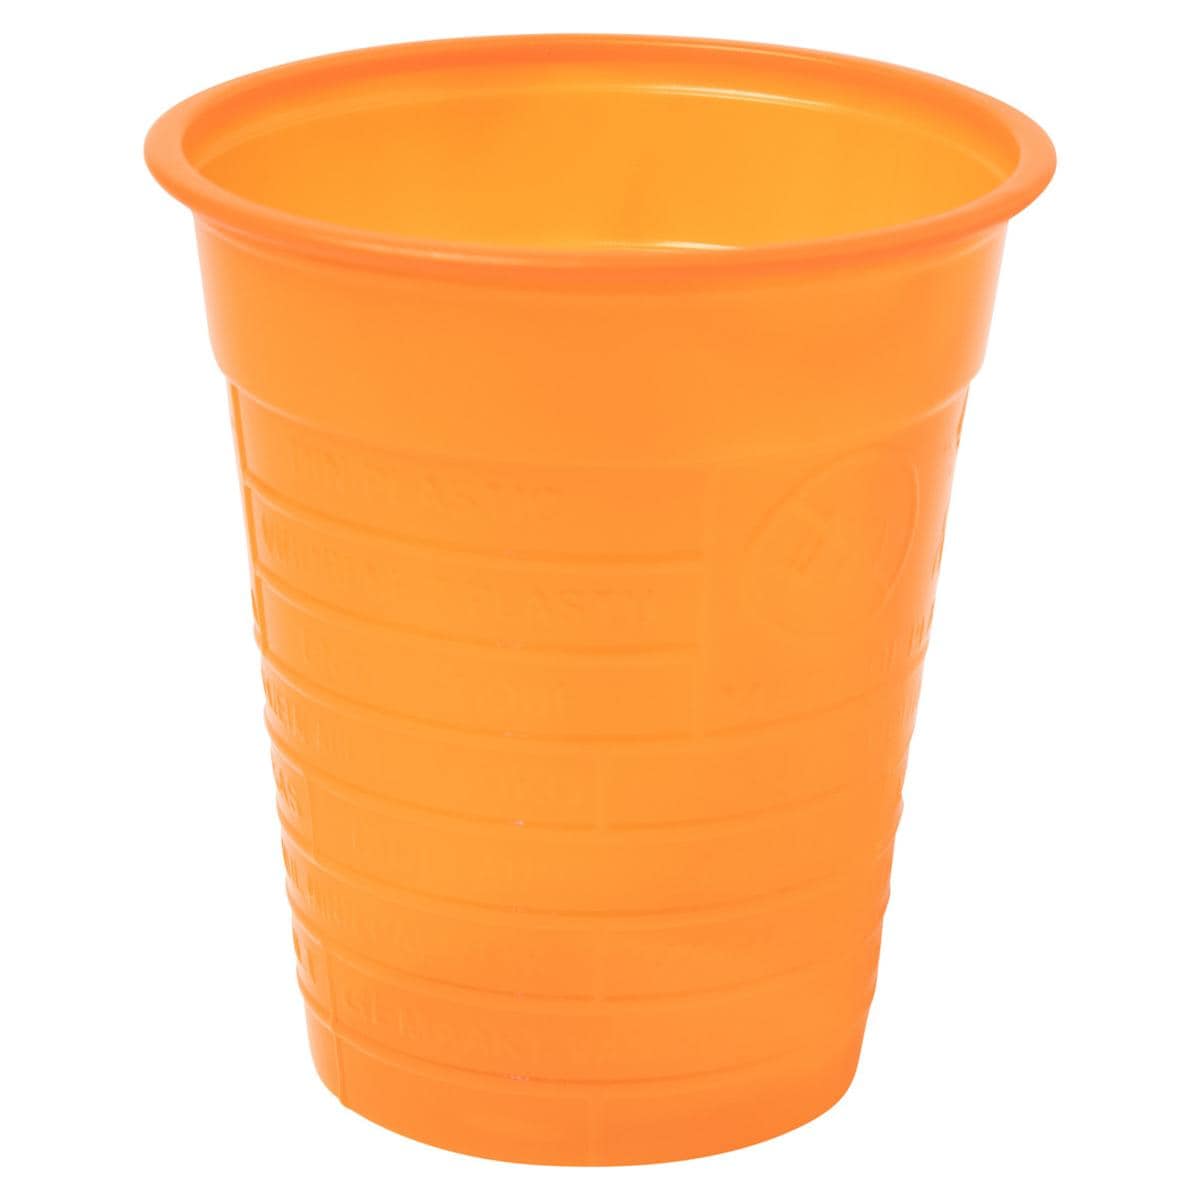 HS-Mundspülbecher 180 ml, Einfarbig - Orange, Karton 3.000 Stück